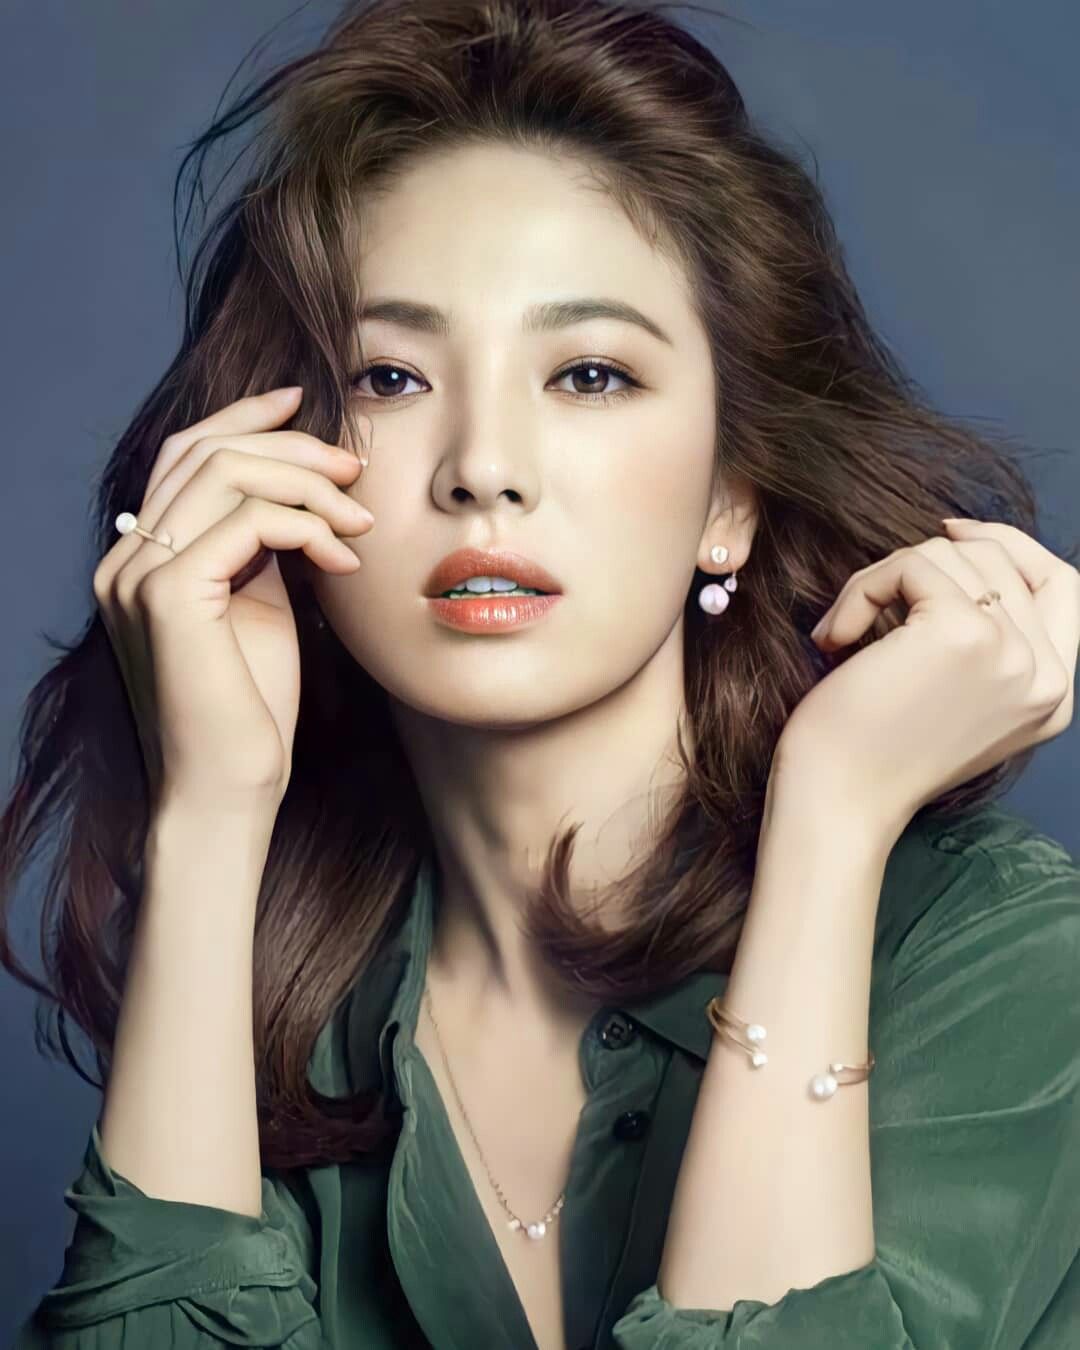 “Chị đẹp” Song Hye Kyo và số lần hợp tác cùng trai trẻ trên màn ảnh khiến fan “ôm tim” vì quá đẹp đôi